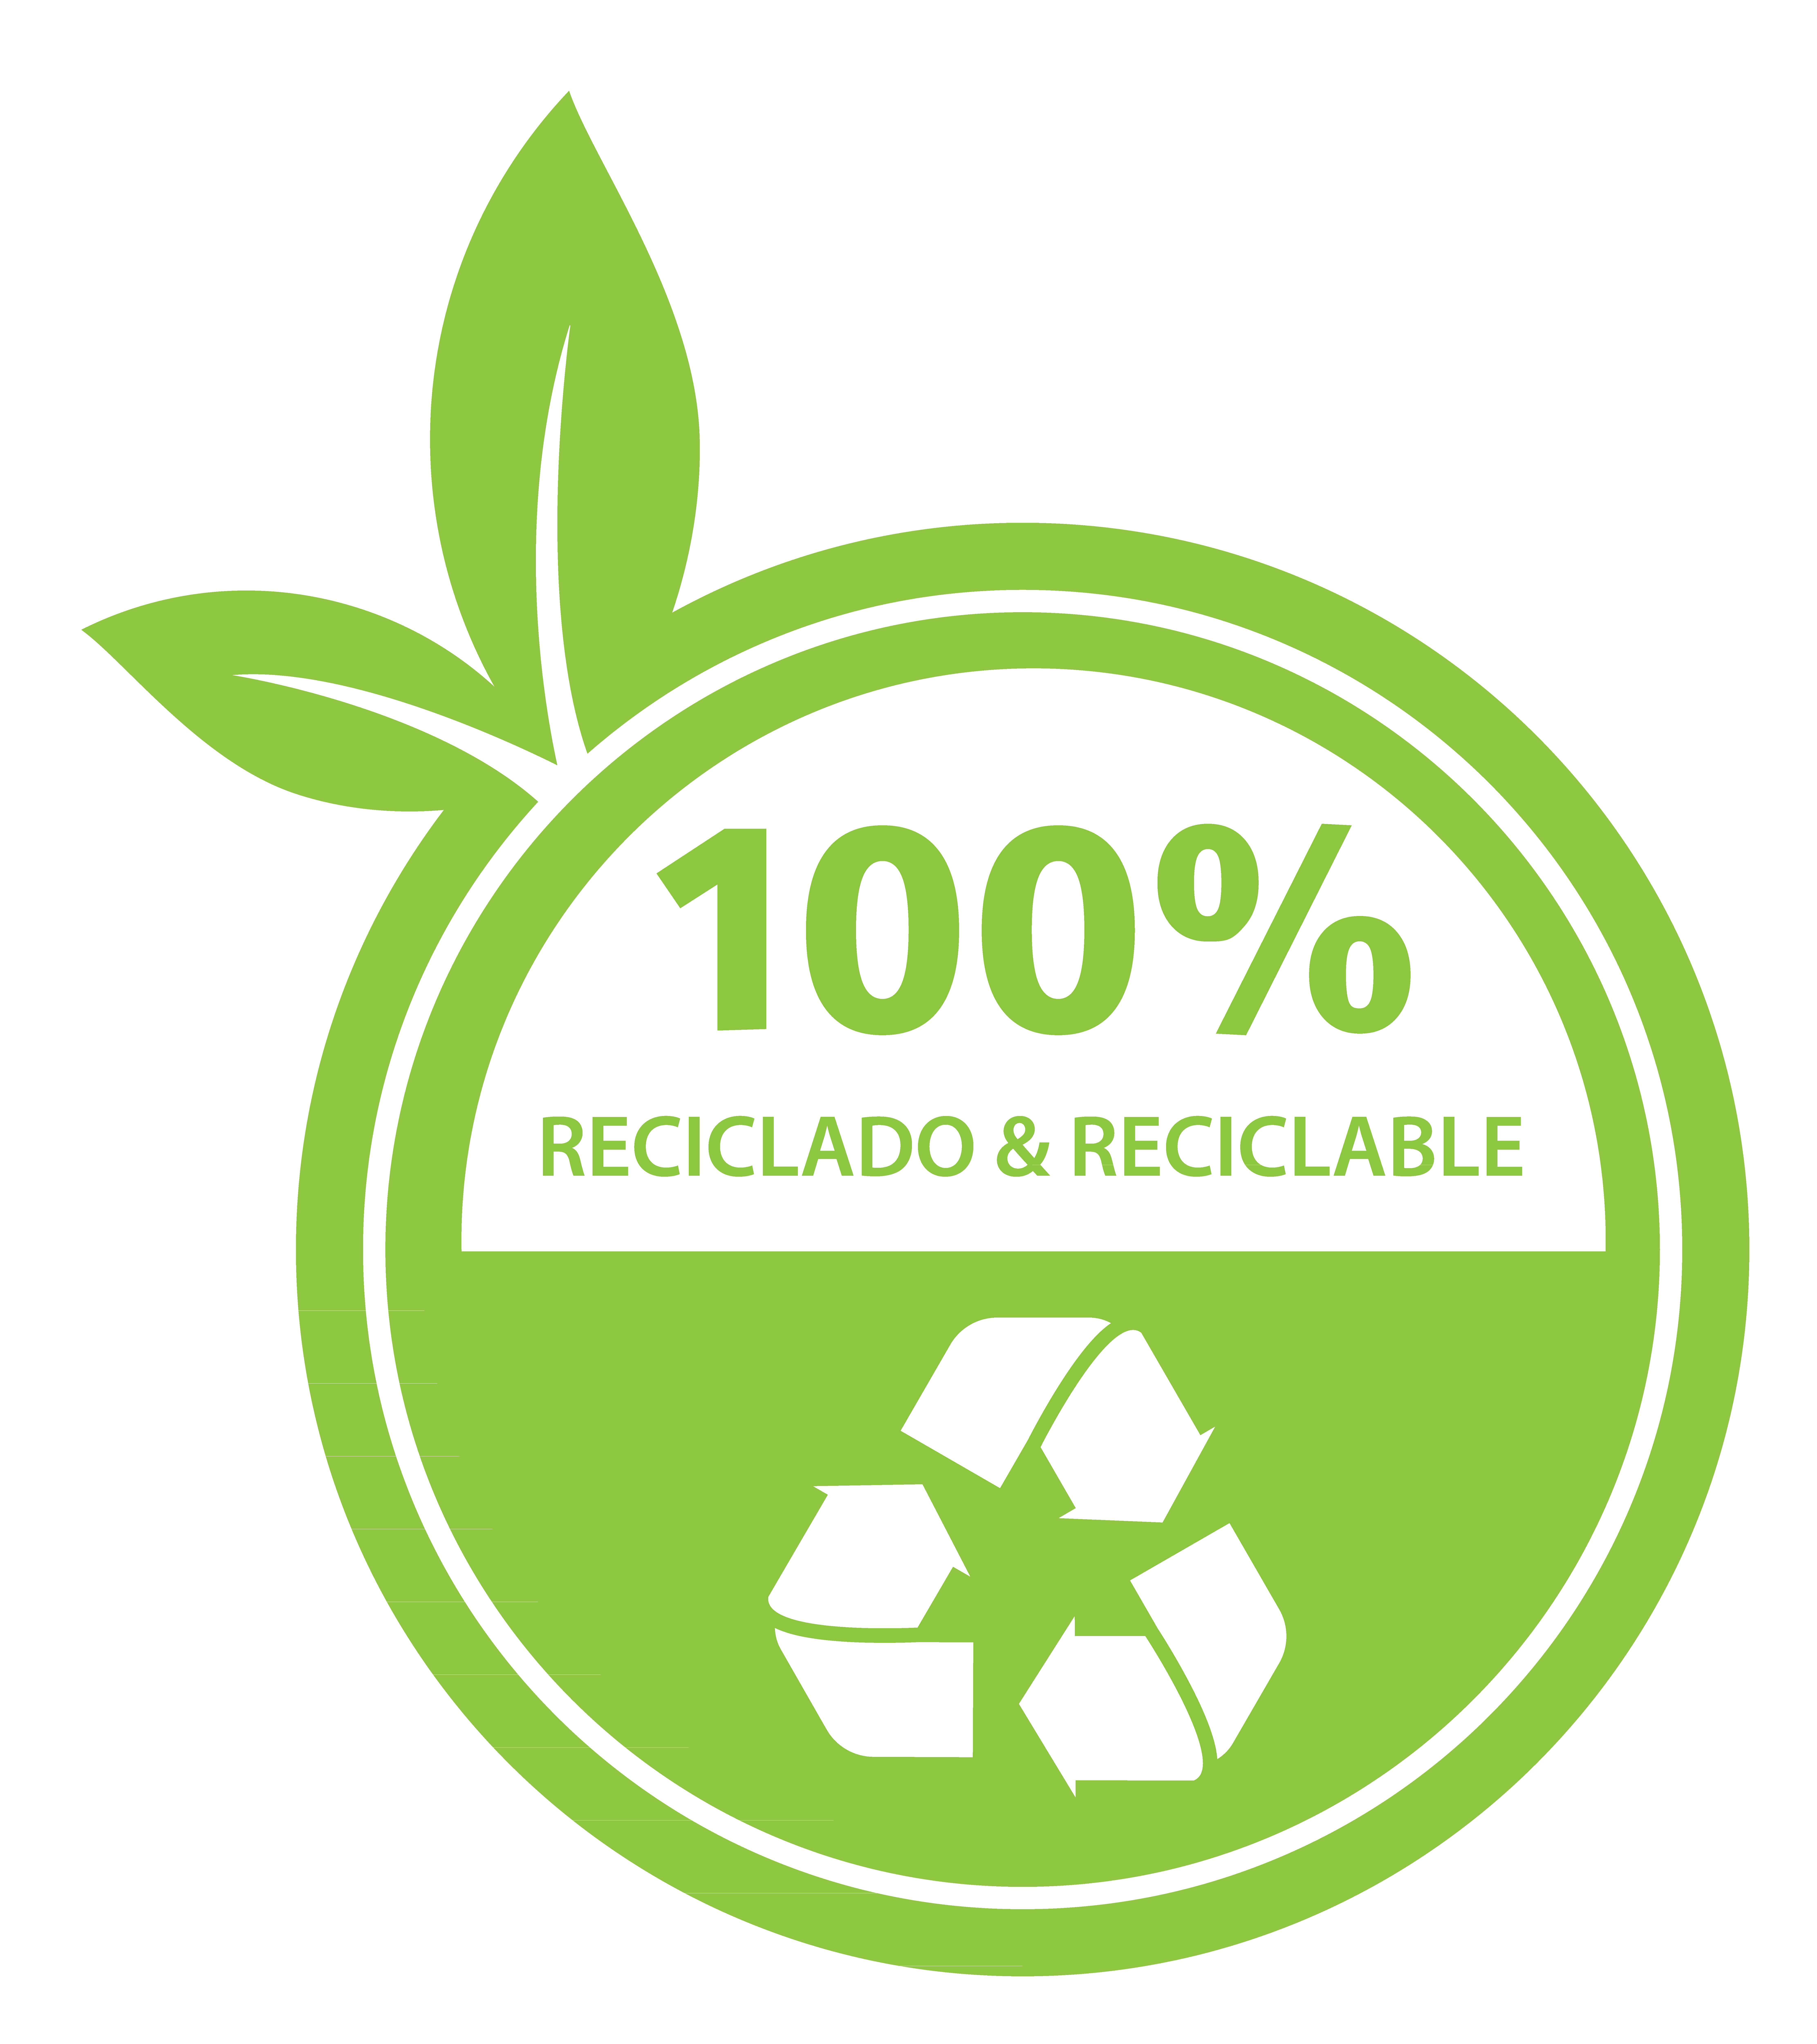 100% reciclado y reciclable